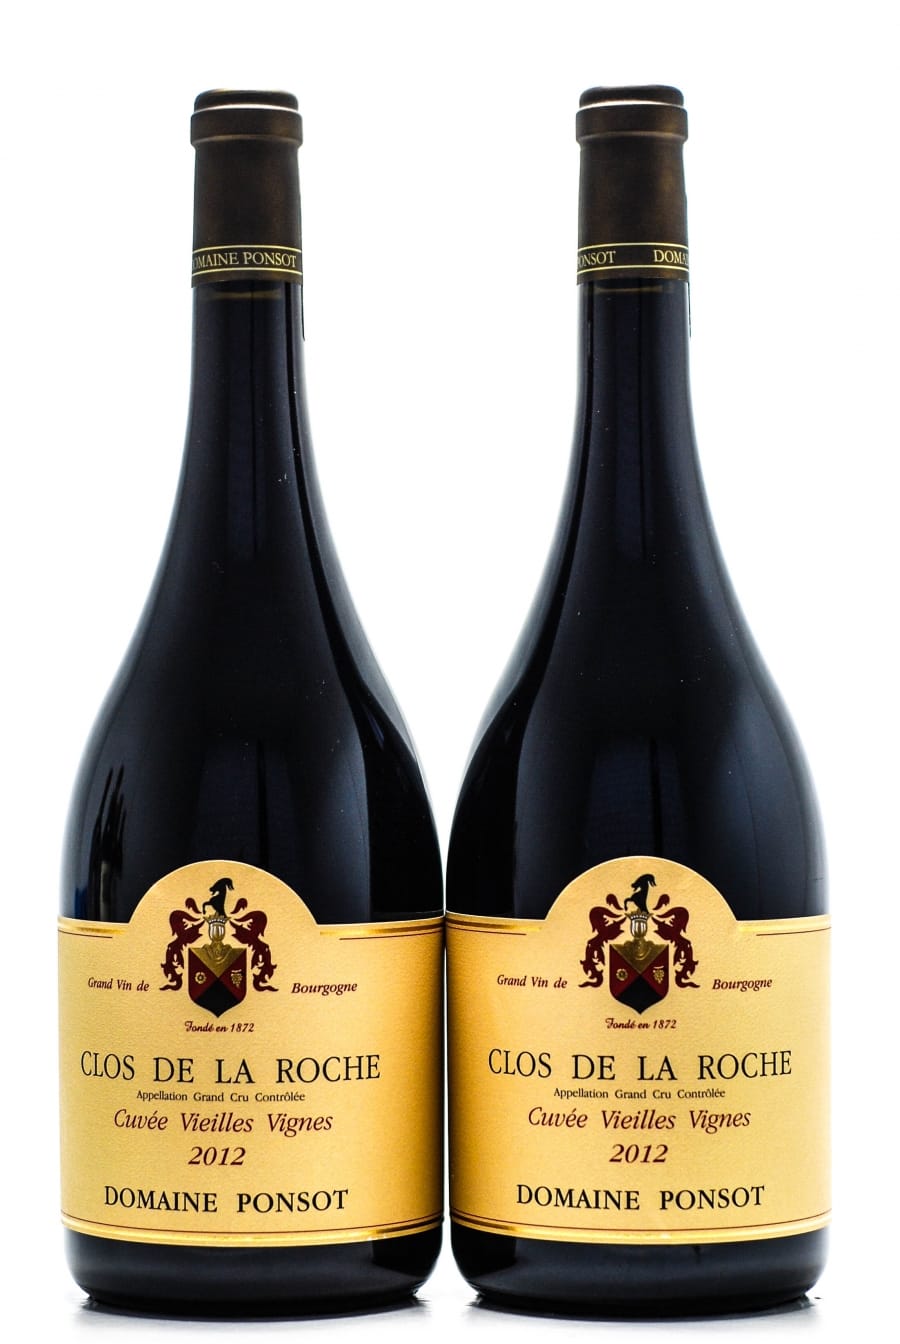 Domaine Ponsot - Clos de la Roche cuvee Vieille Vignes 2012 Perfect